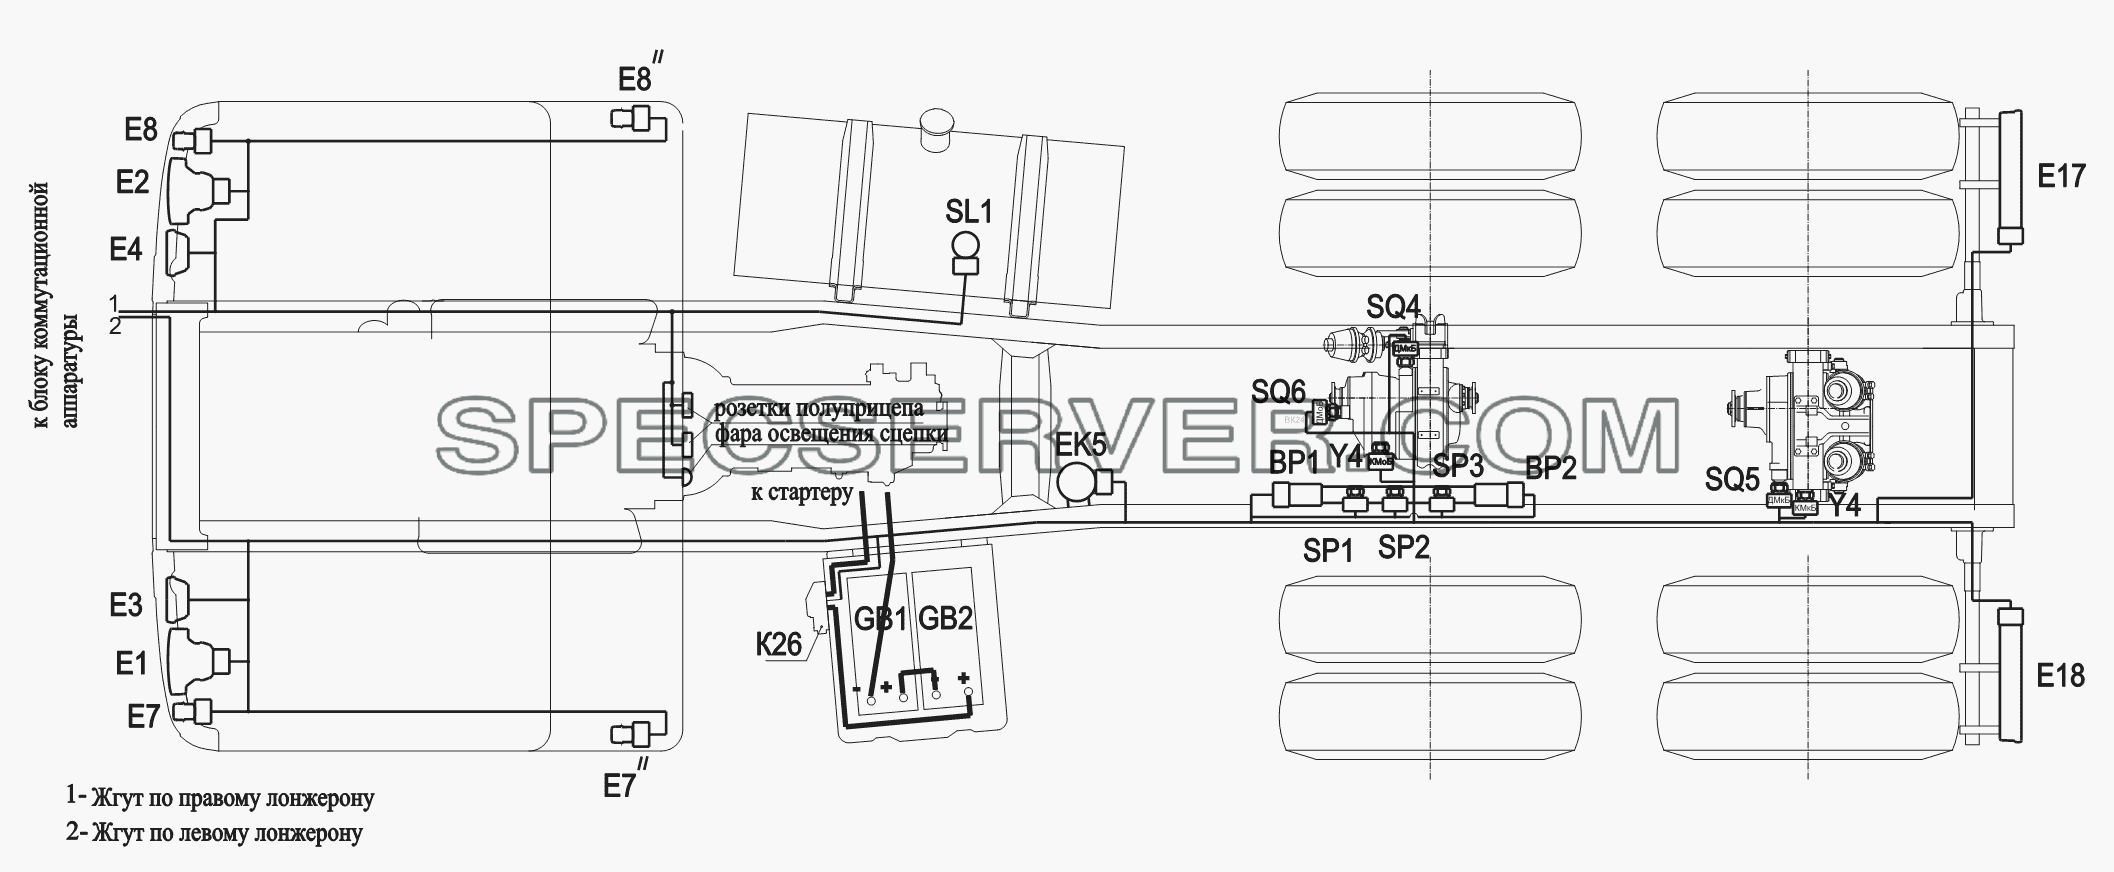 Расположение разъемов и элементов электрооборудования на шасси 6430A8 для МАЗ-6430A8 (5440A8, 5440A5) (список запасных частей)